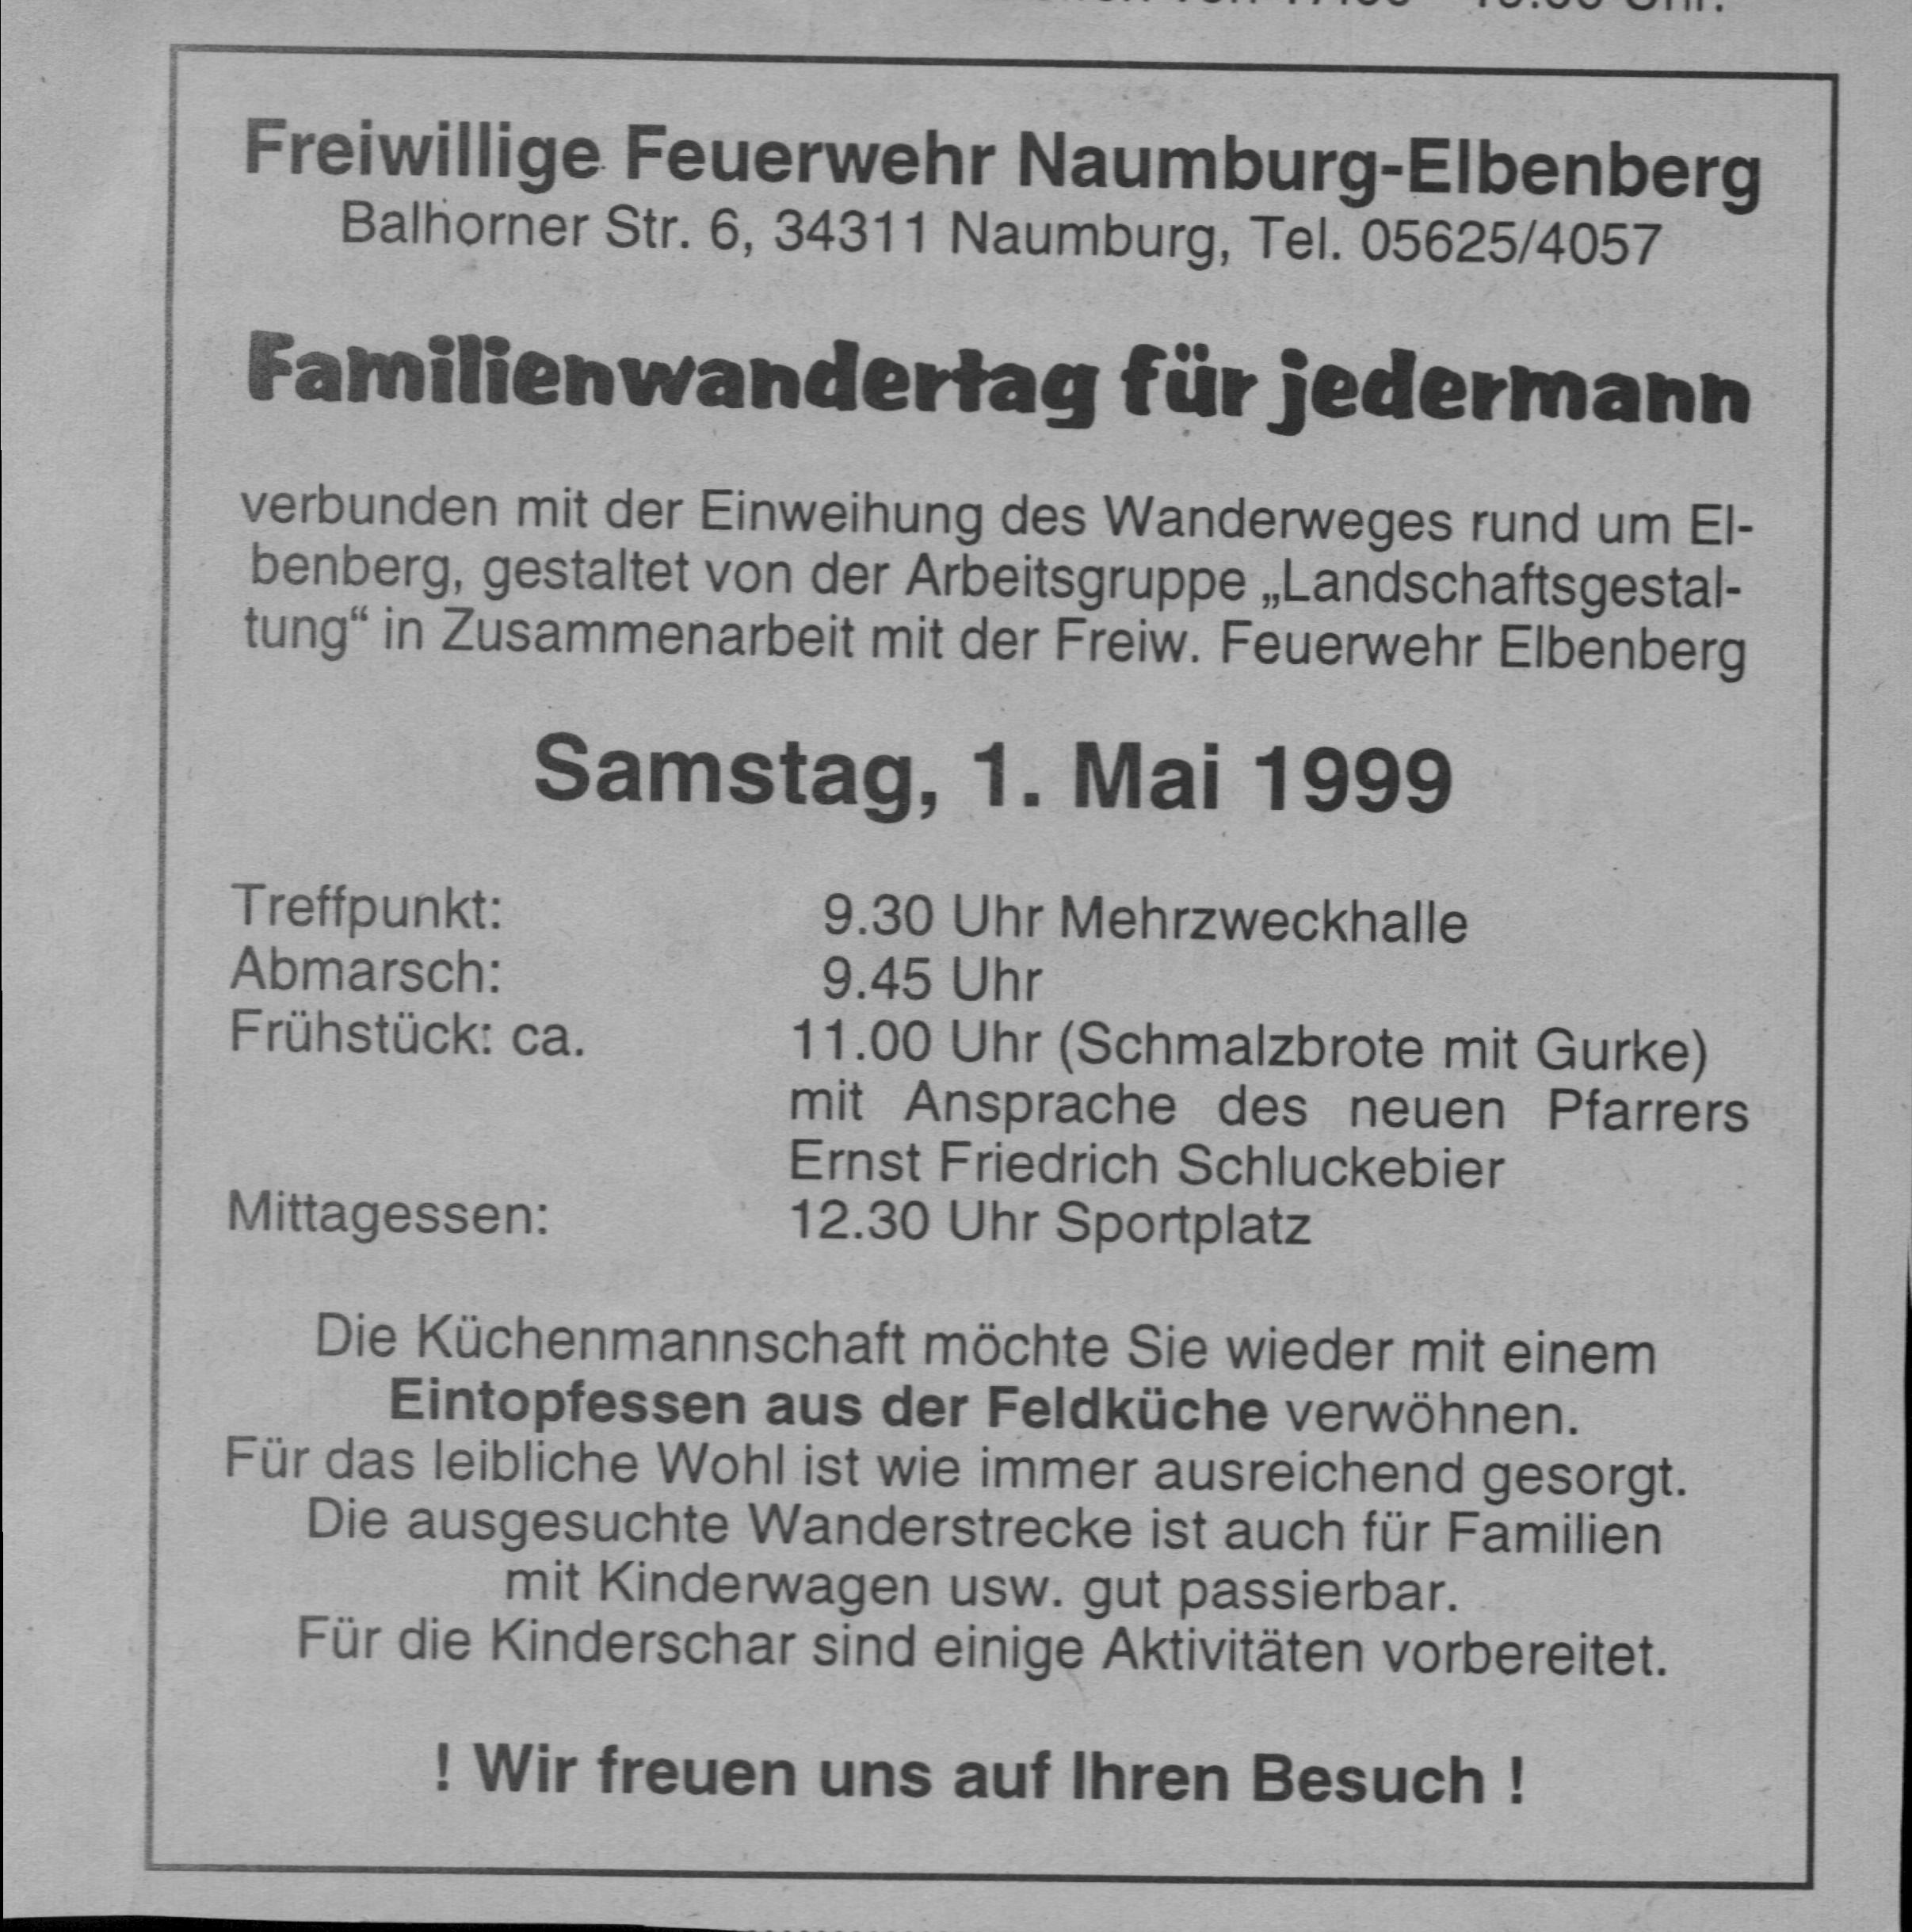 1999 04 29 Einladung zum 1. Mai Familienwandertag